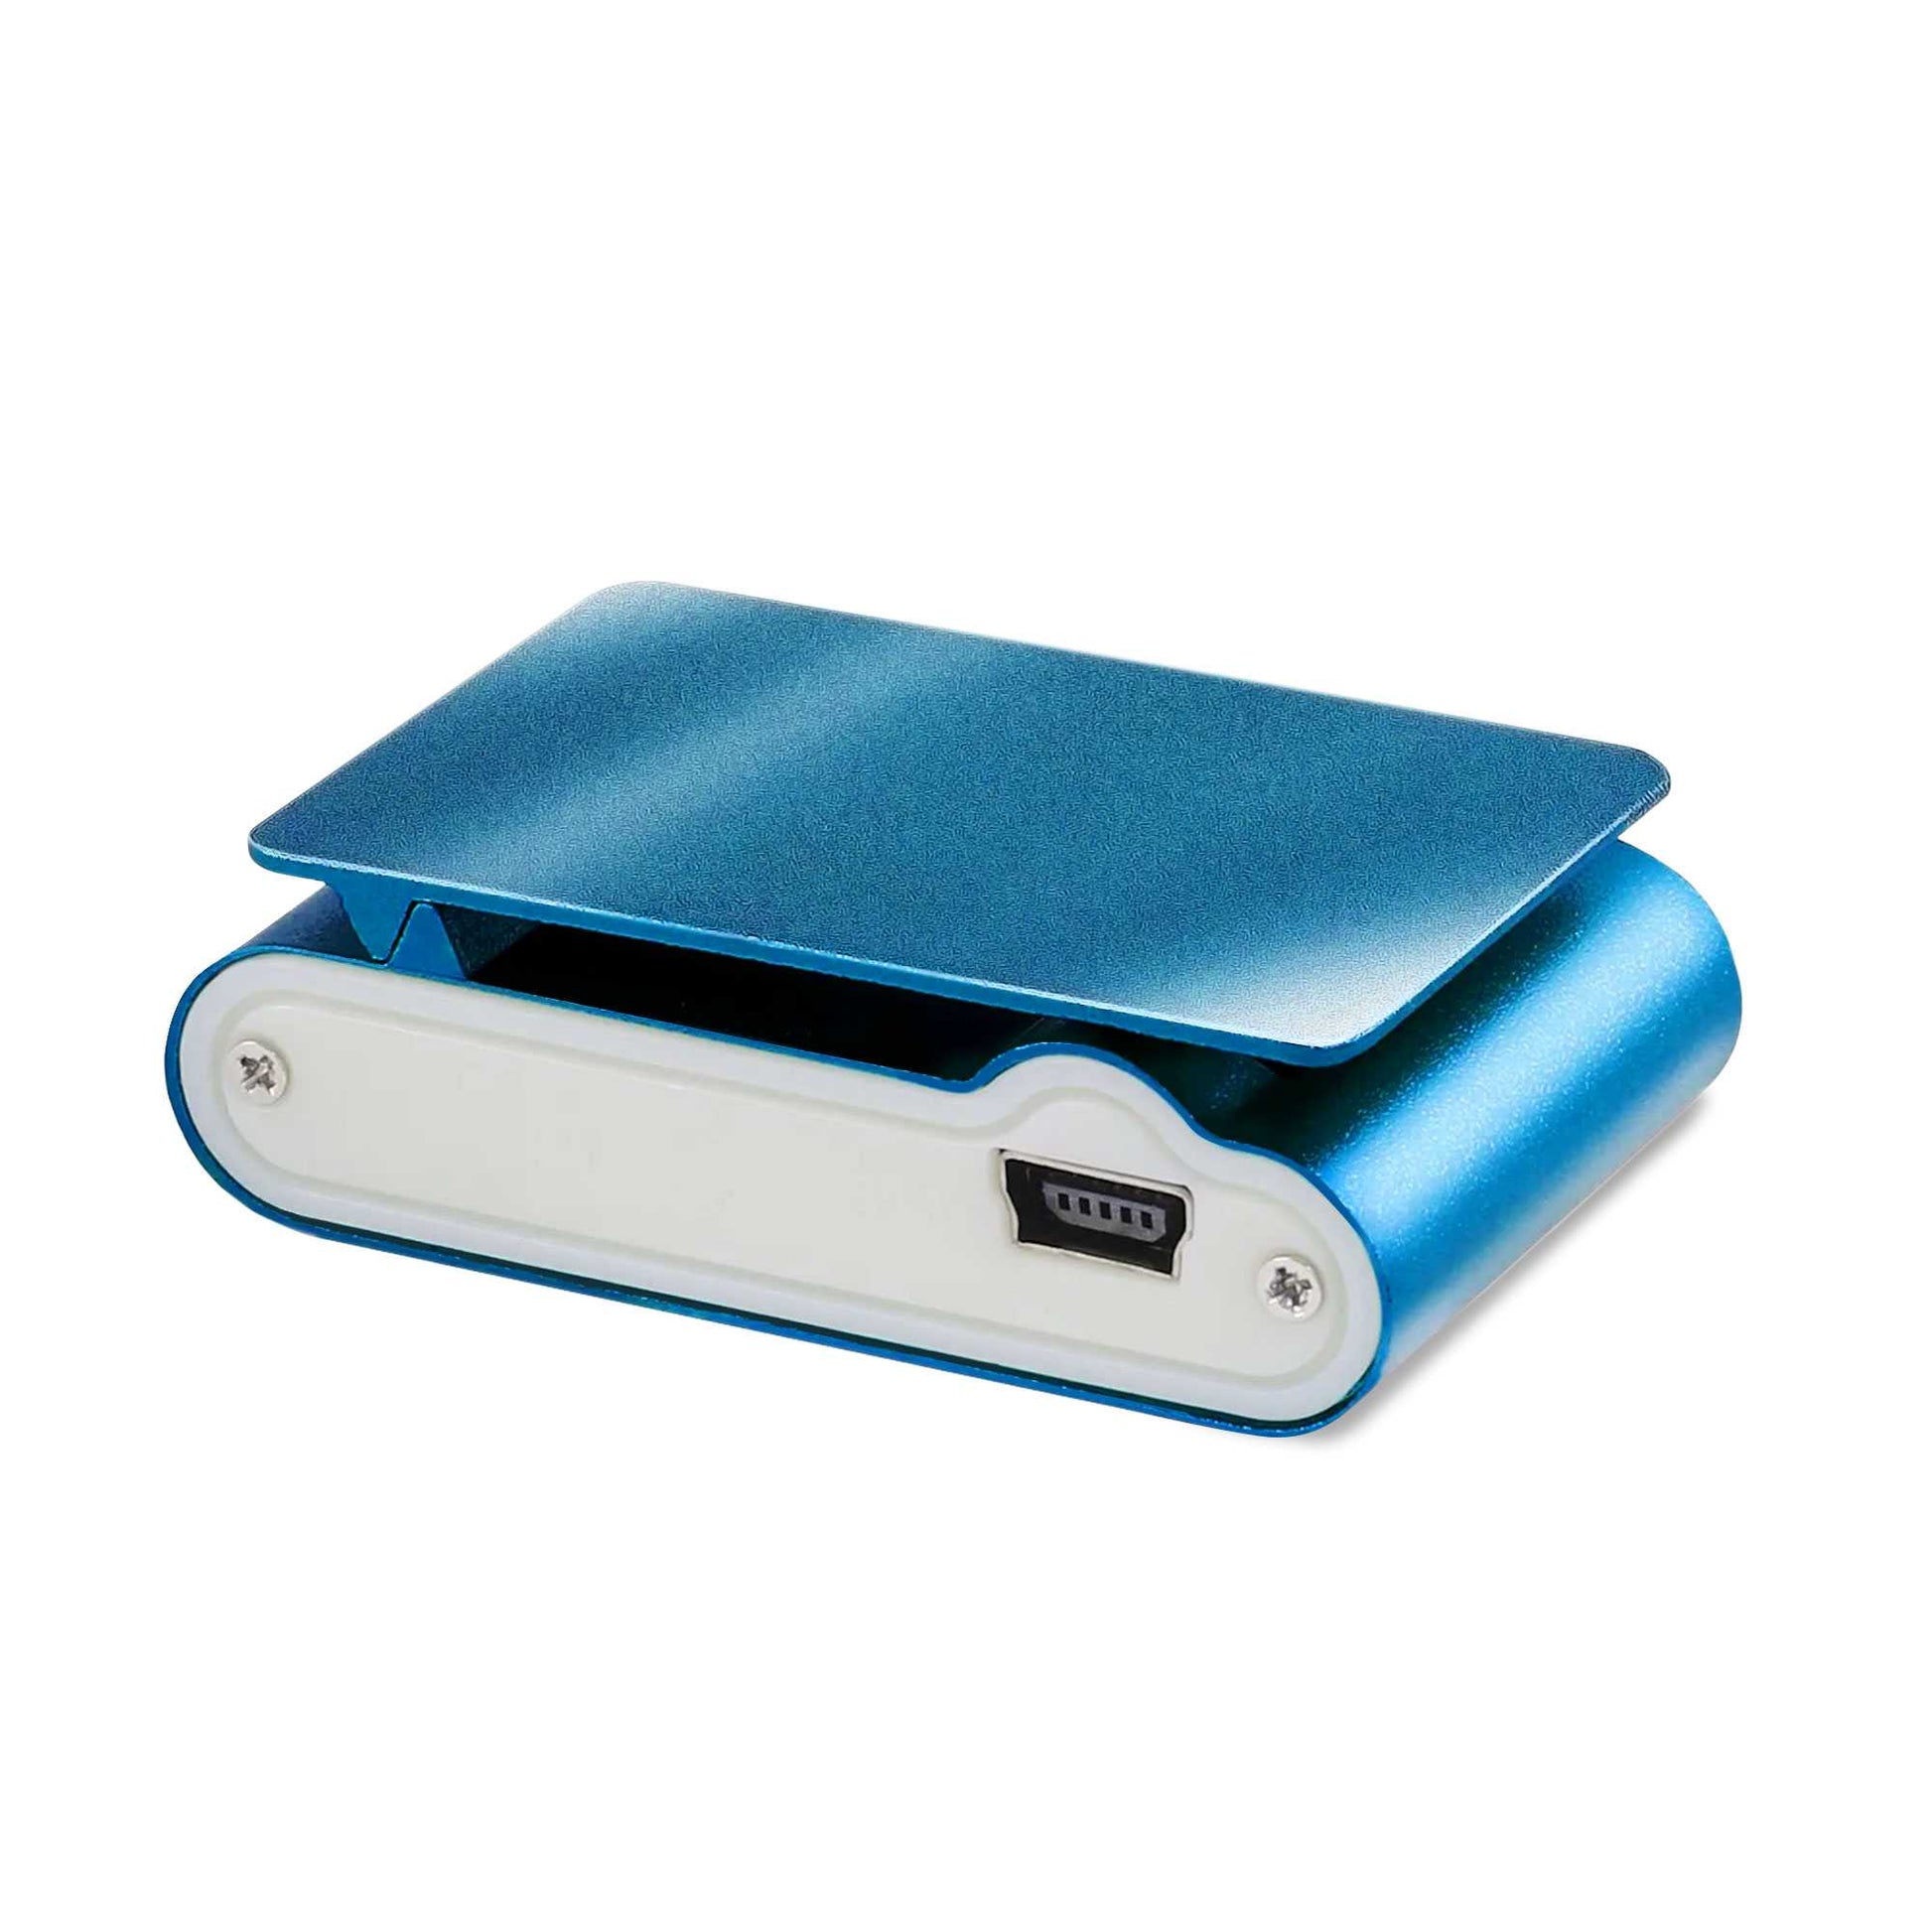 Lector Reproductor MP3 Player Azul Aluminio Puerto Mini USB Ranura para Tarjeta Micro SD con Clip Pantalla